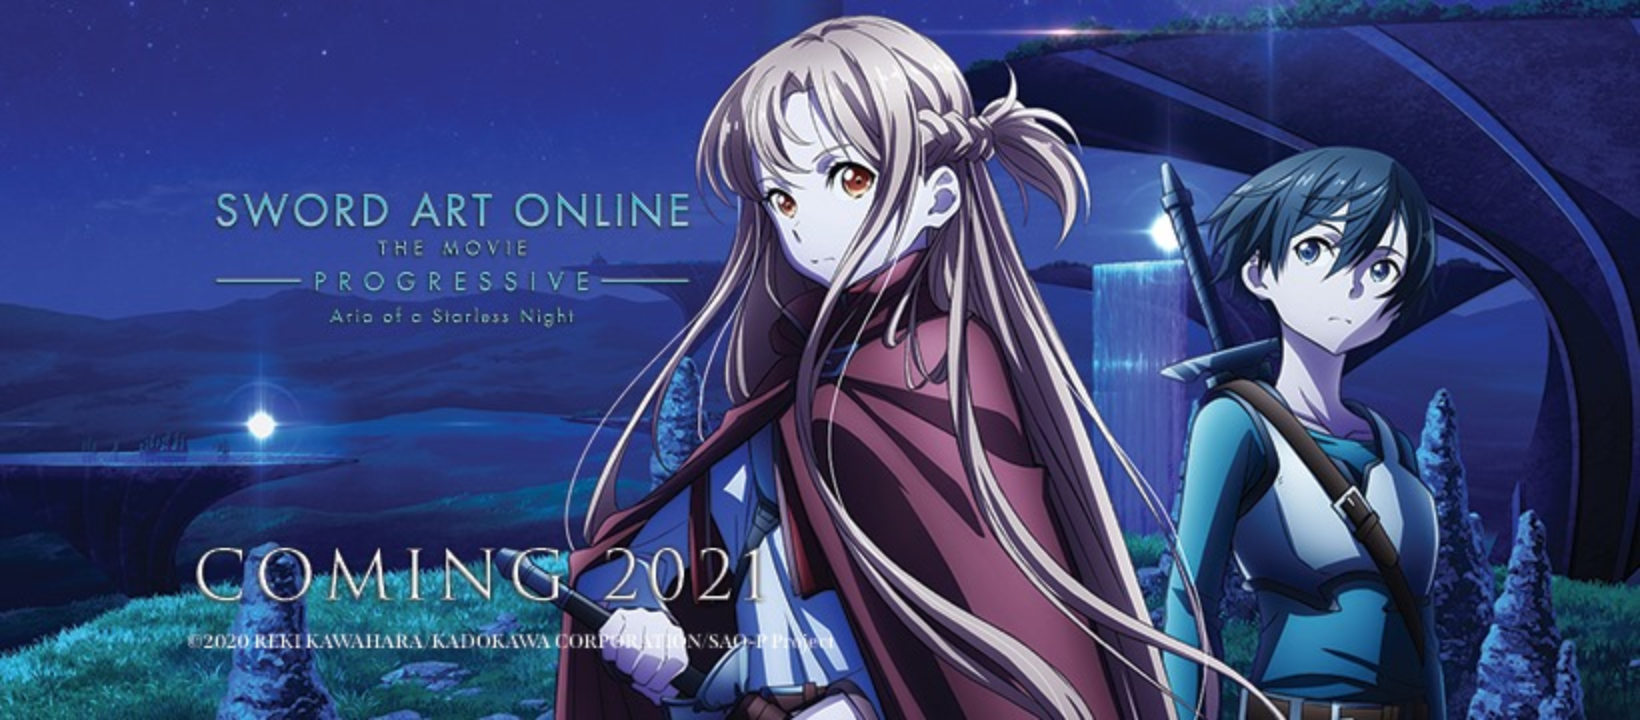 Sword Art Online Progressive Announces New Film for 2022